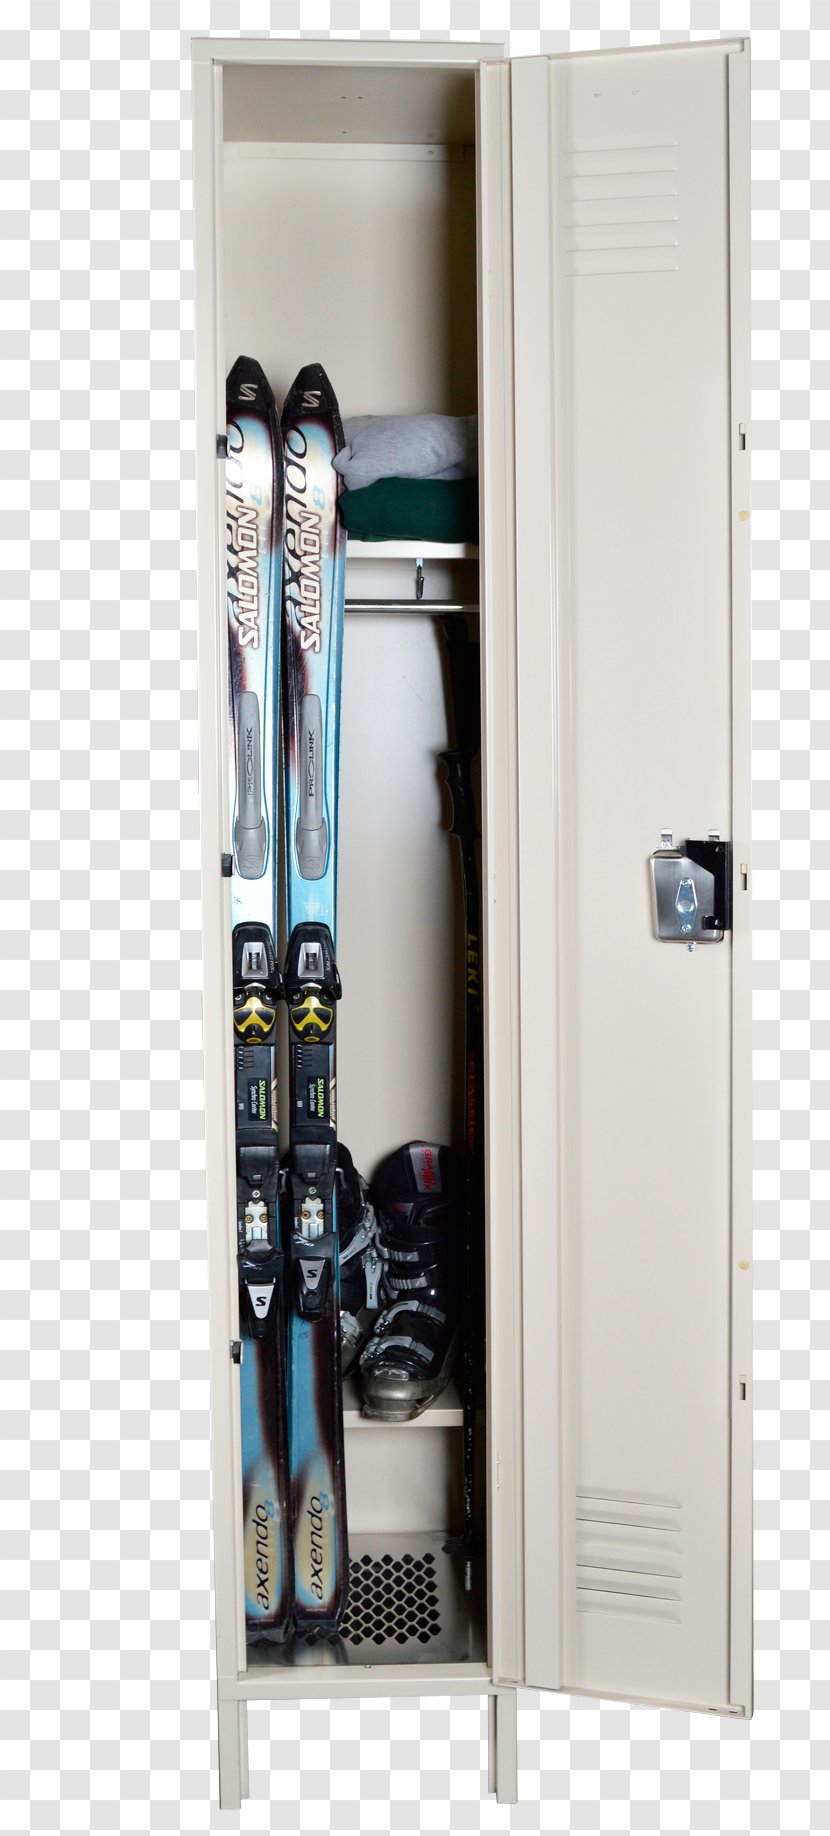 Armoires & Wardrobes Locker Closet Skiing Garage Transparent PNG